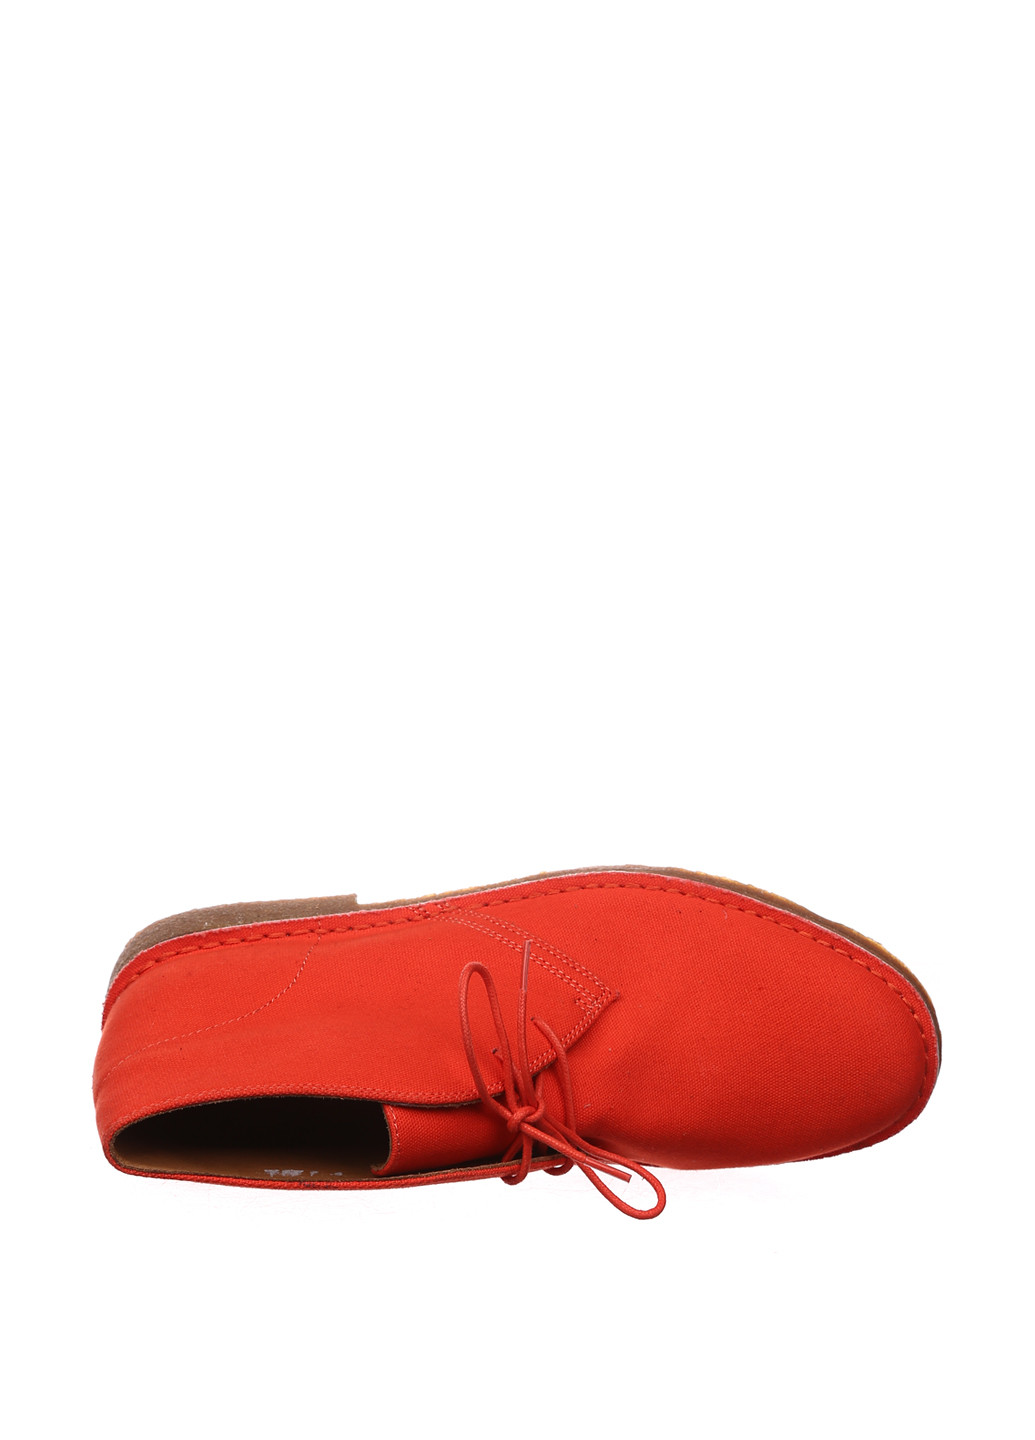 Оранжевые осенние ботинки дезерты Ralph Lauren